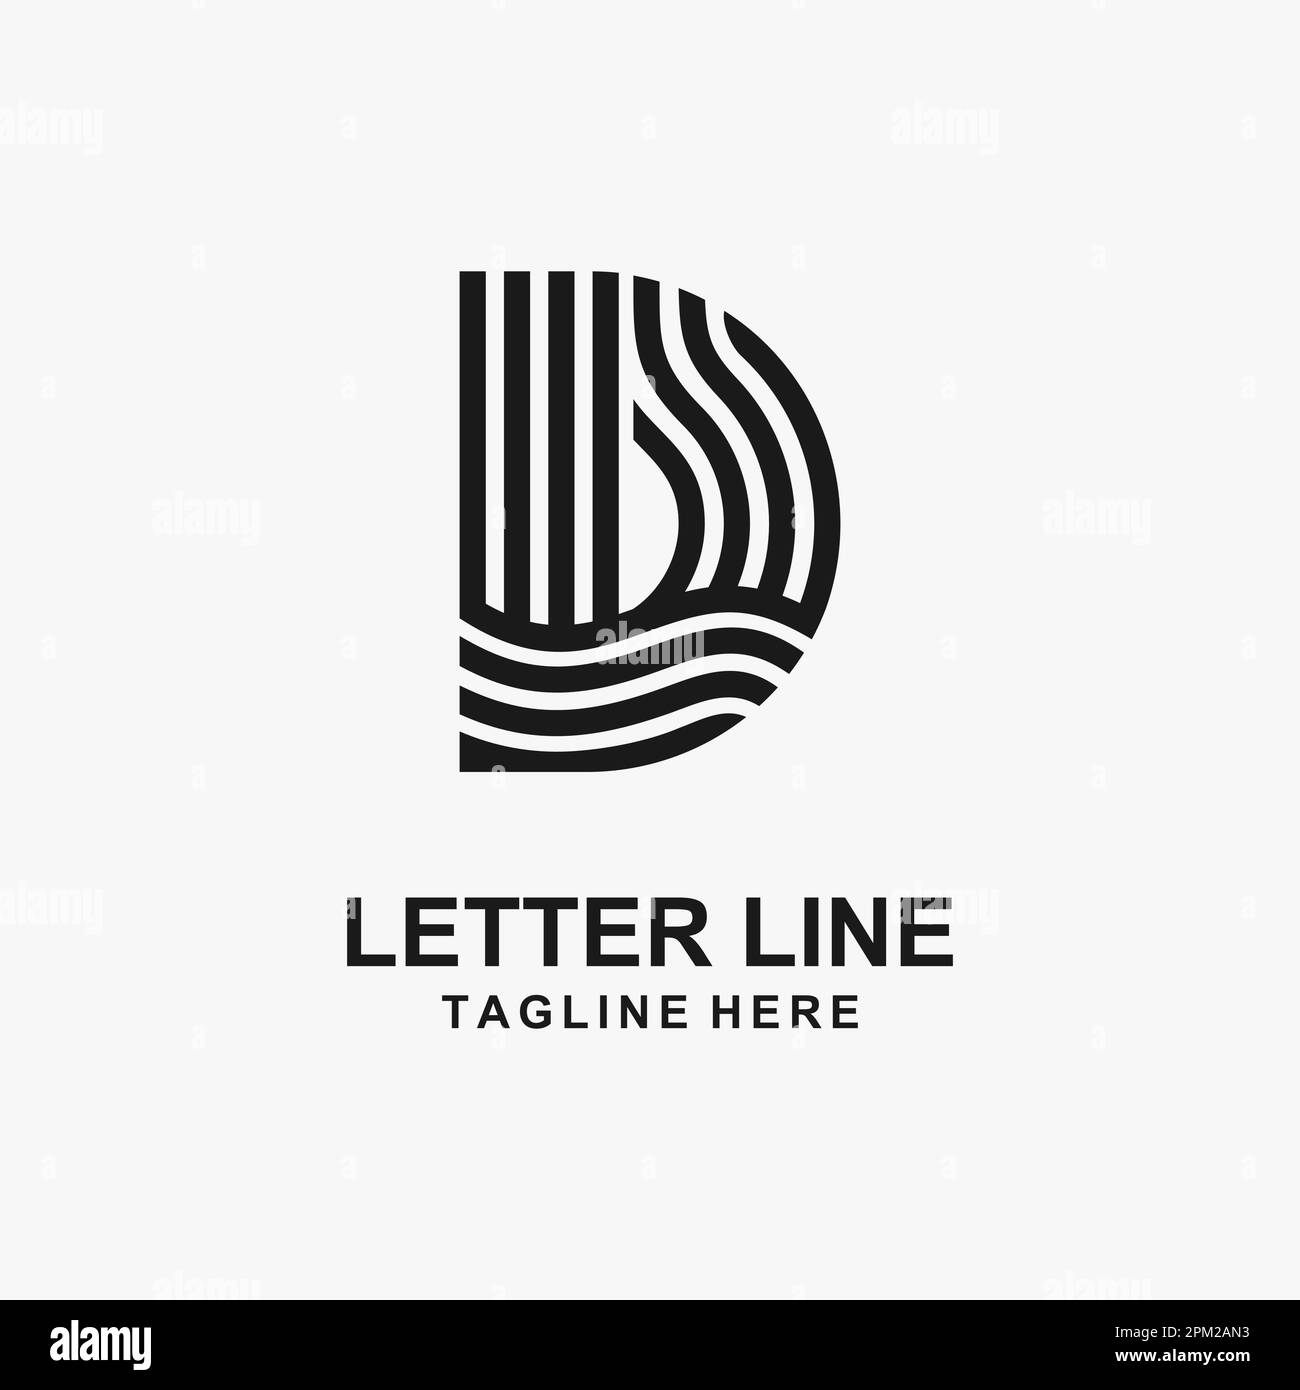 Letter D line logo design Stock Vector